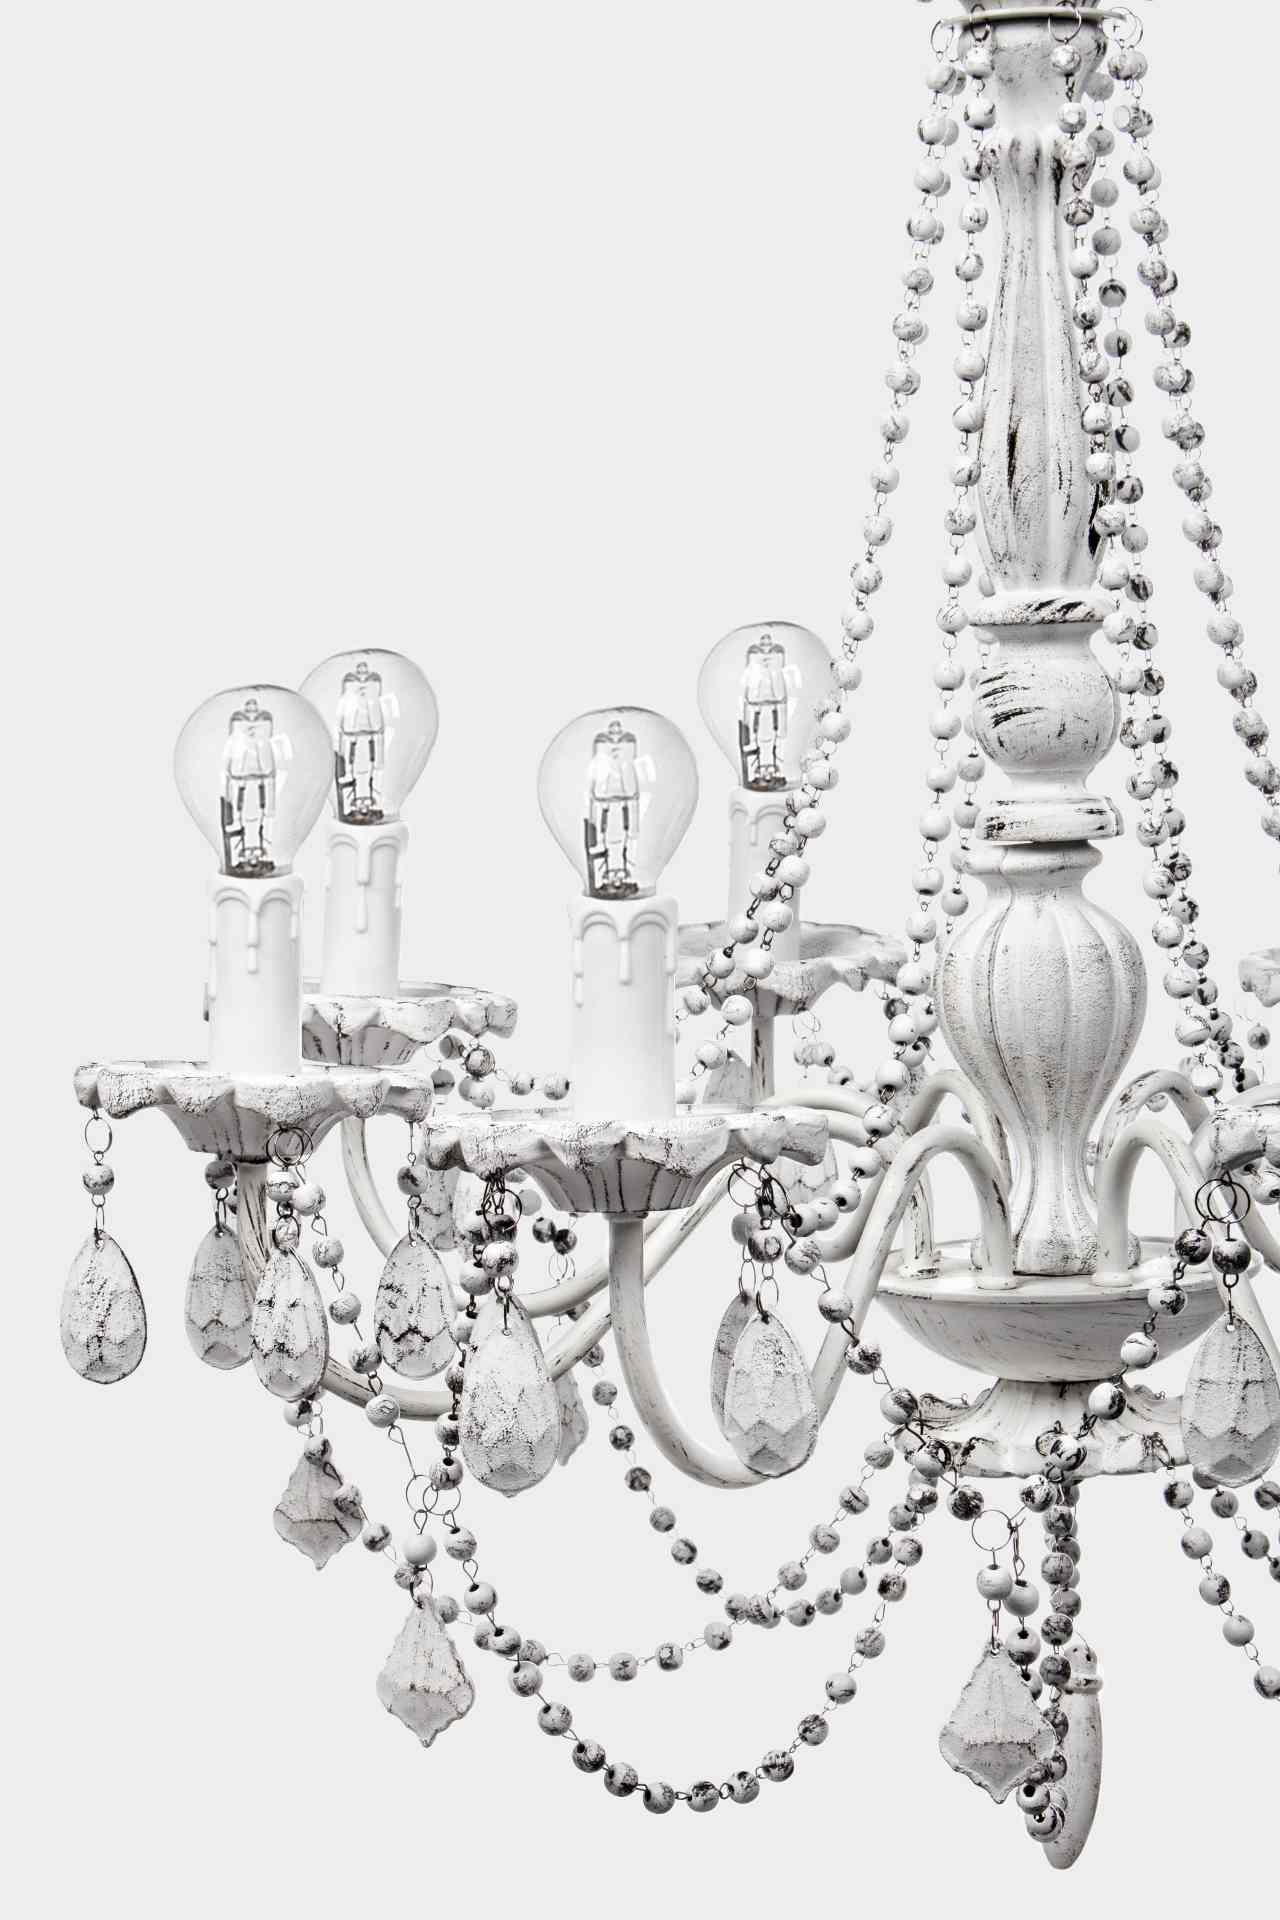 Die Hängeleuchte Beads überzeugt mit ihrem klassischen Design. Gefertigt wurde sie aus Metall, welches einen weißen Farbton besitzt. Die Lampe besitzt eine Höhe von 53 cm.